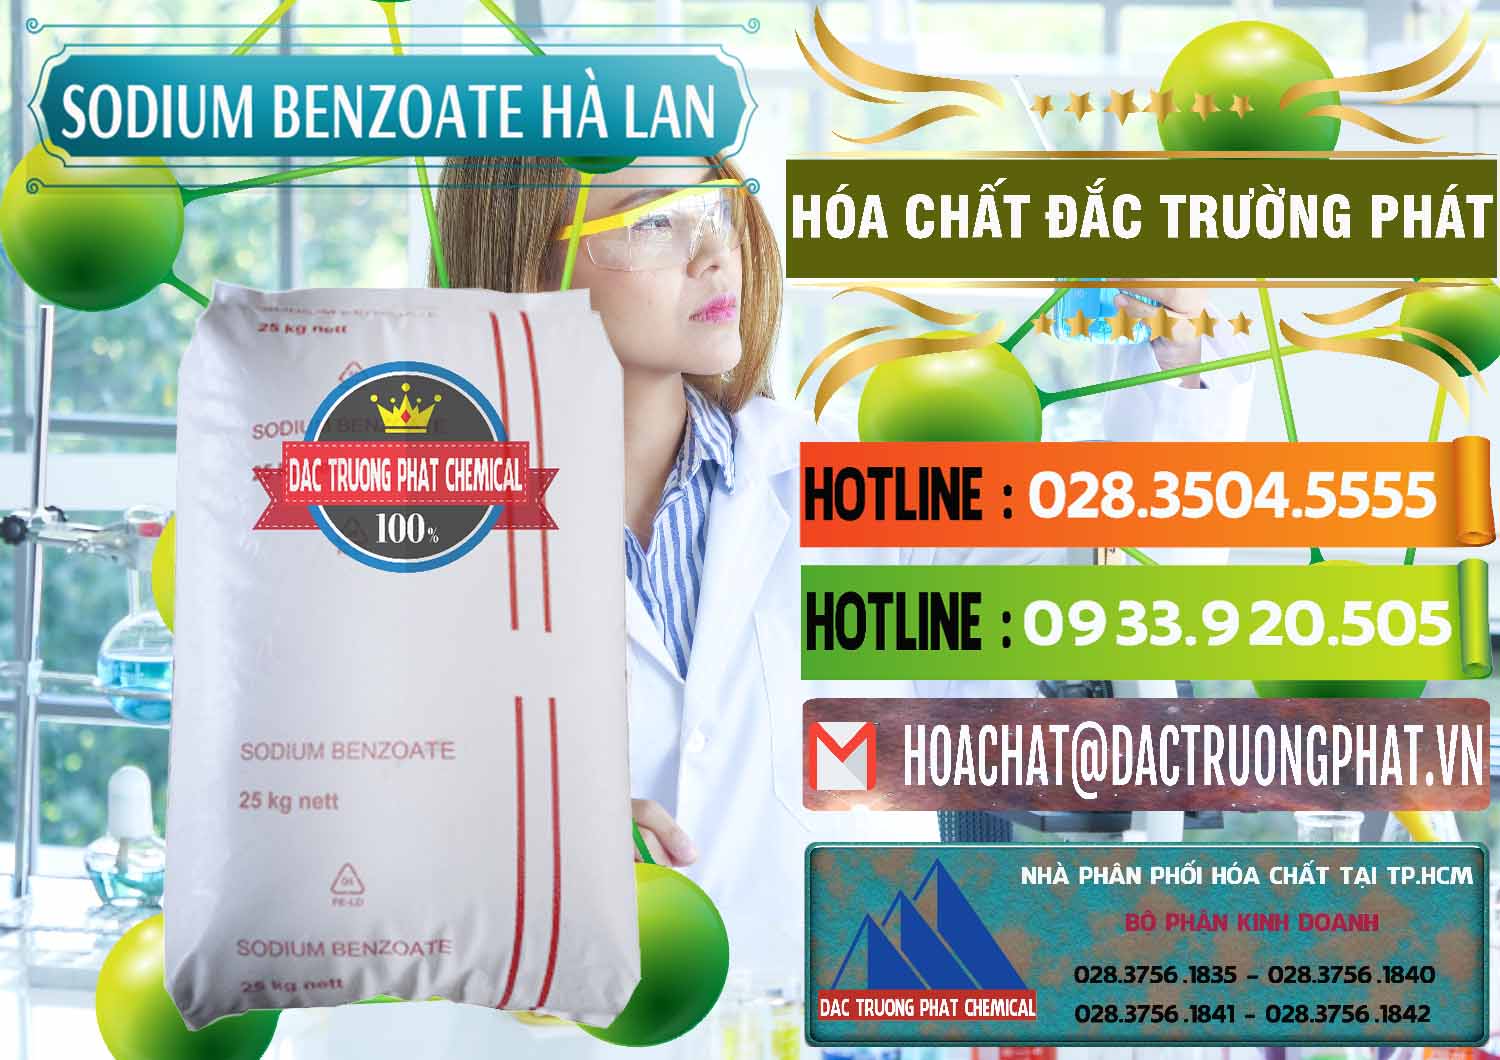 Đơn vị chuyên bán ( cung cấp ) Sodium Benzoate - Mốc Bột Chữ Cam Hà Lan Netherlands - 0360 - Đơn vị cung cấp - nhập khẩu hóa chất tại TP.HCM - cungcaphoachat.com.vn